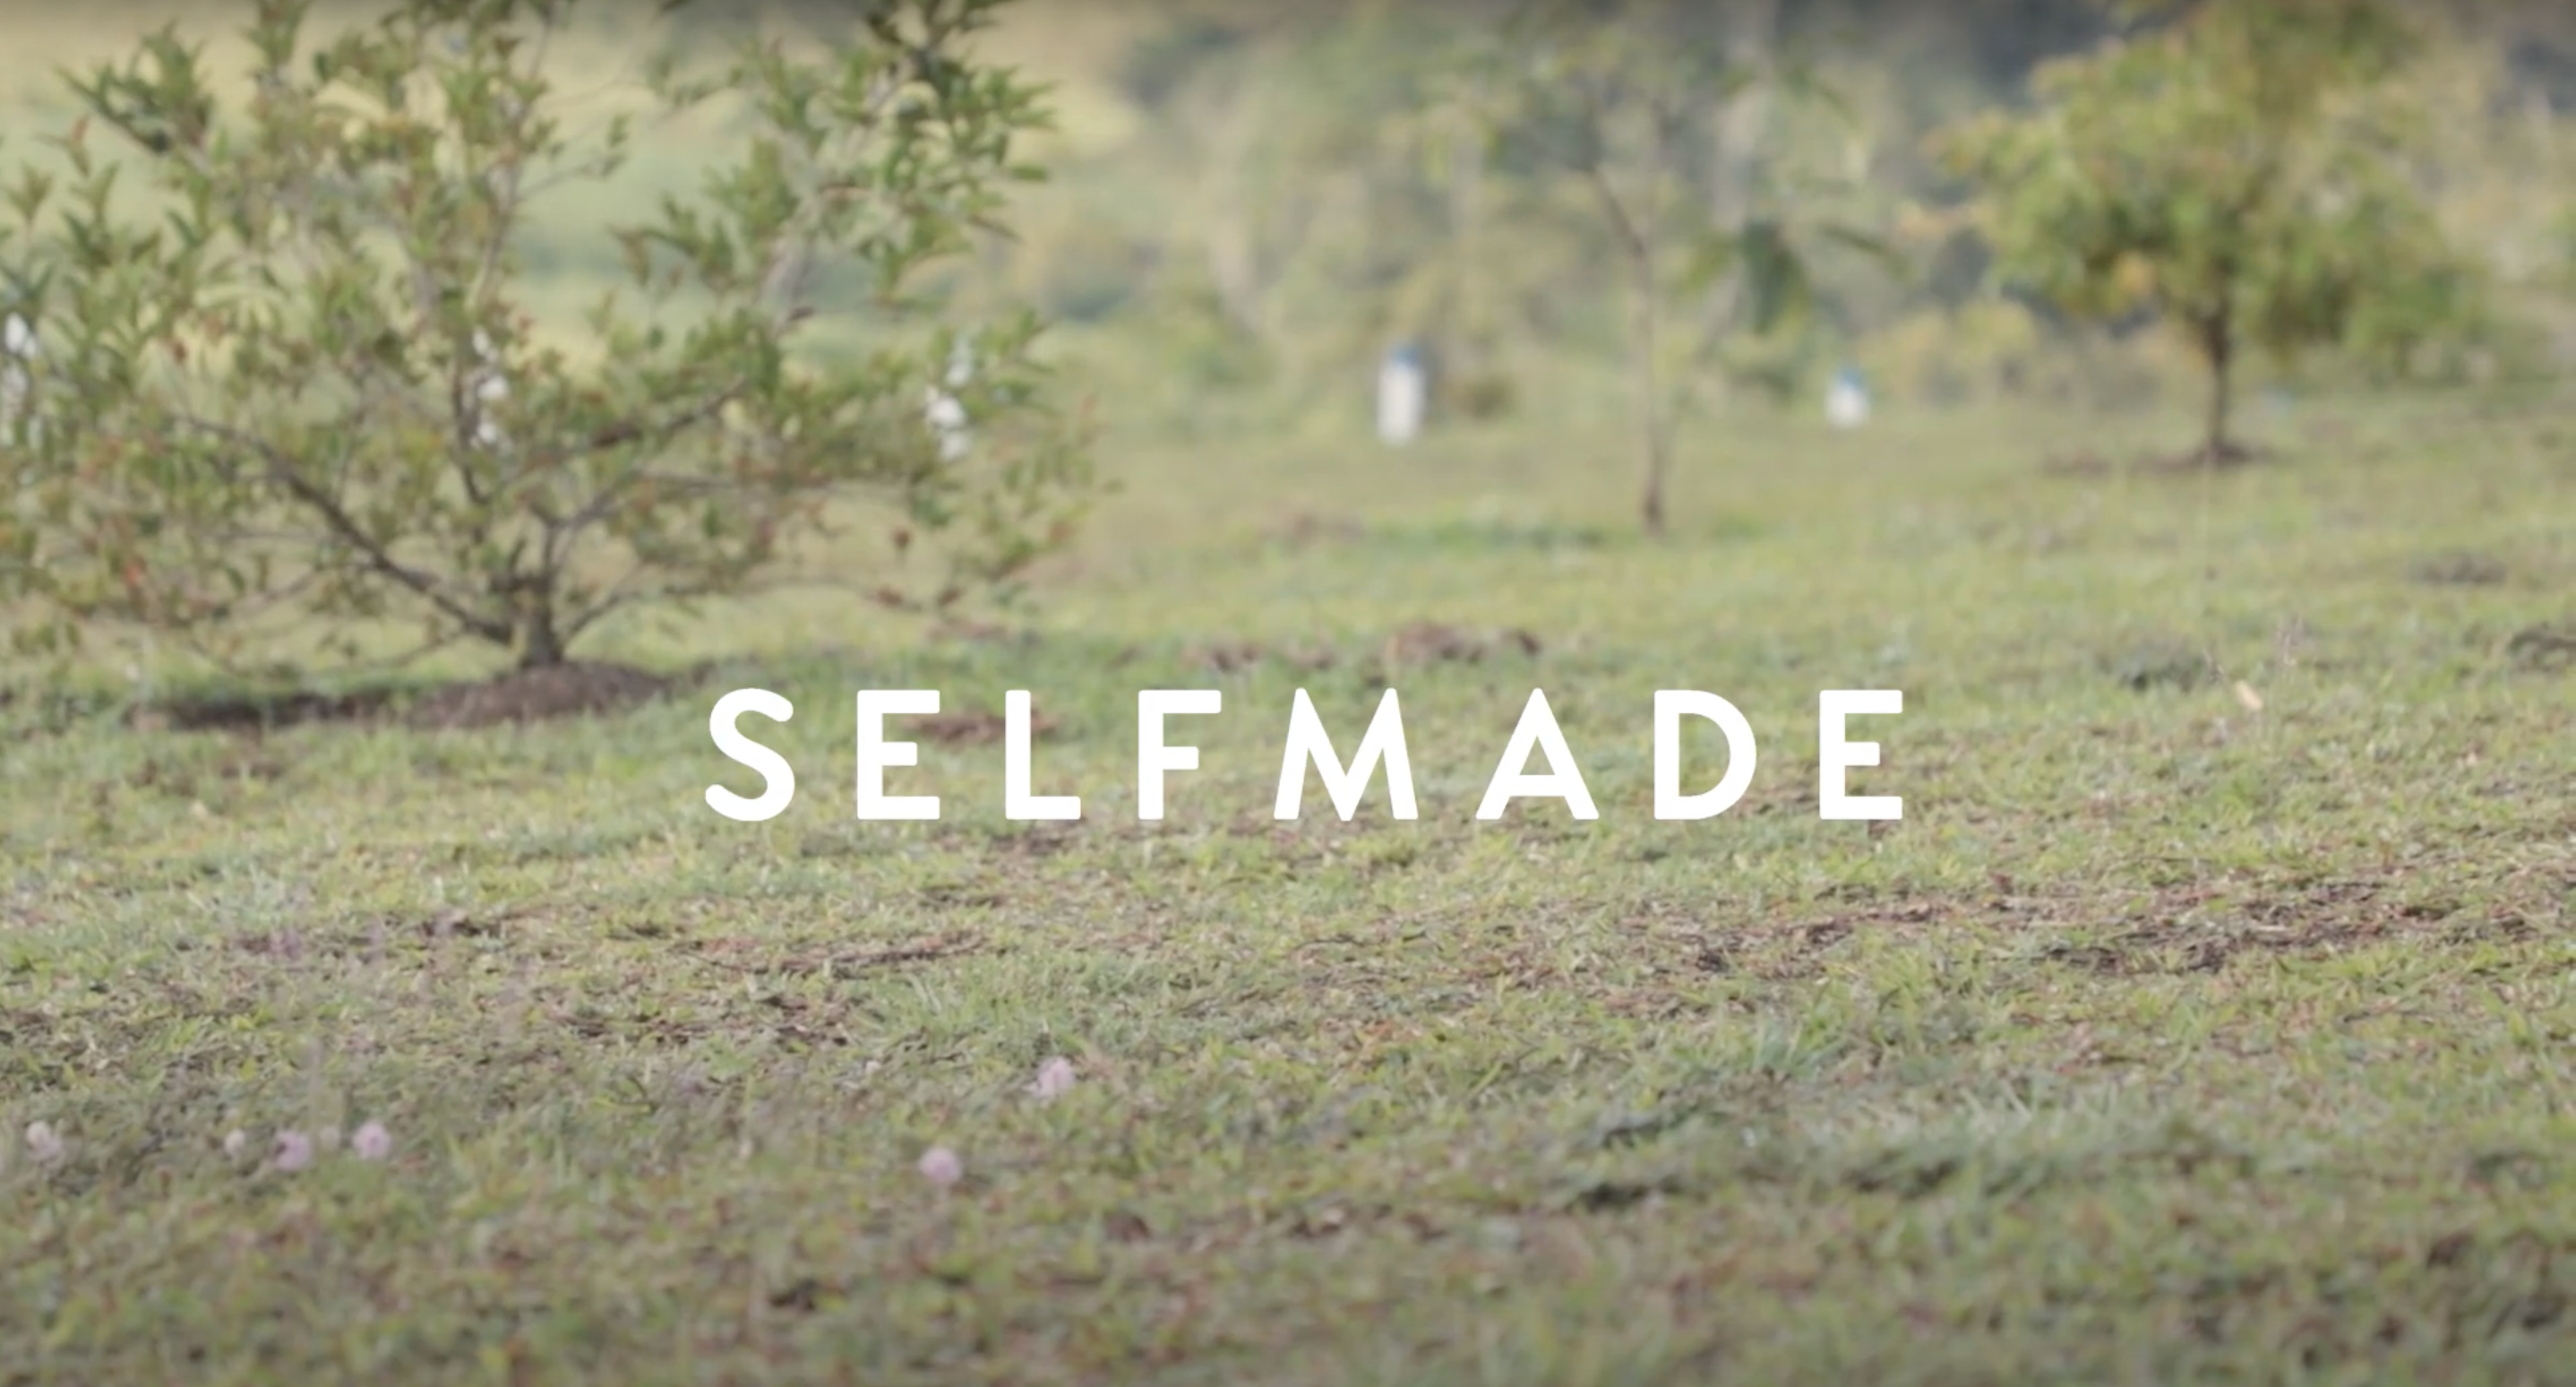 Cargar video: Selfmade empieza aquí, en la naturaleza, rodeada de energía femenina, disfrutando de la libertad de ser.